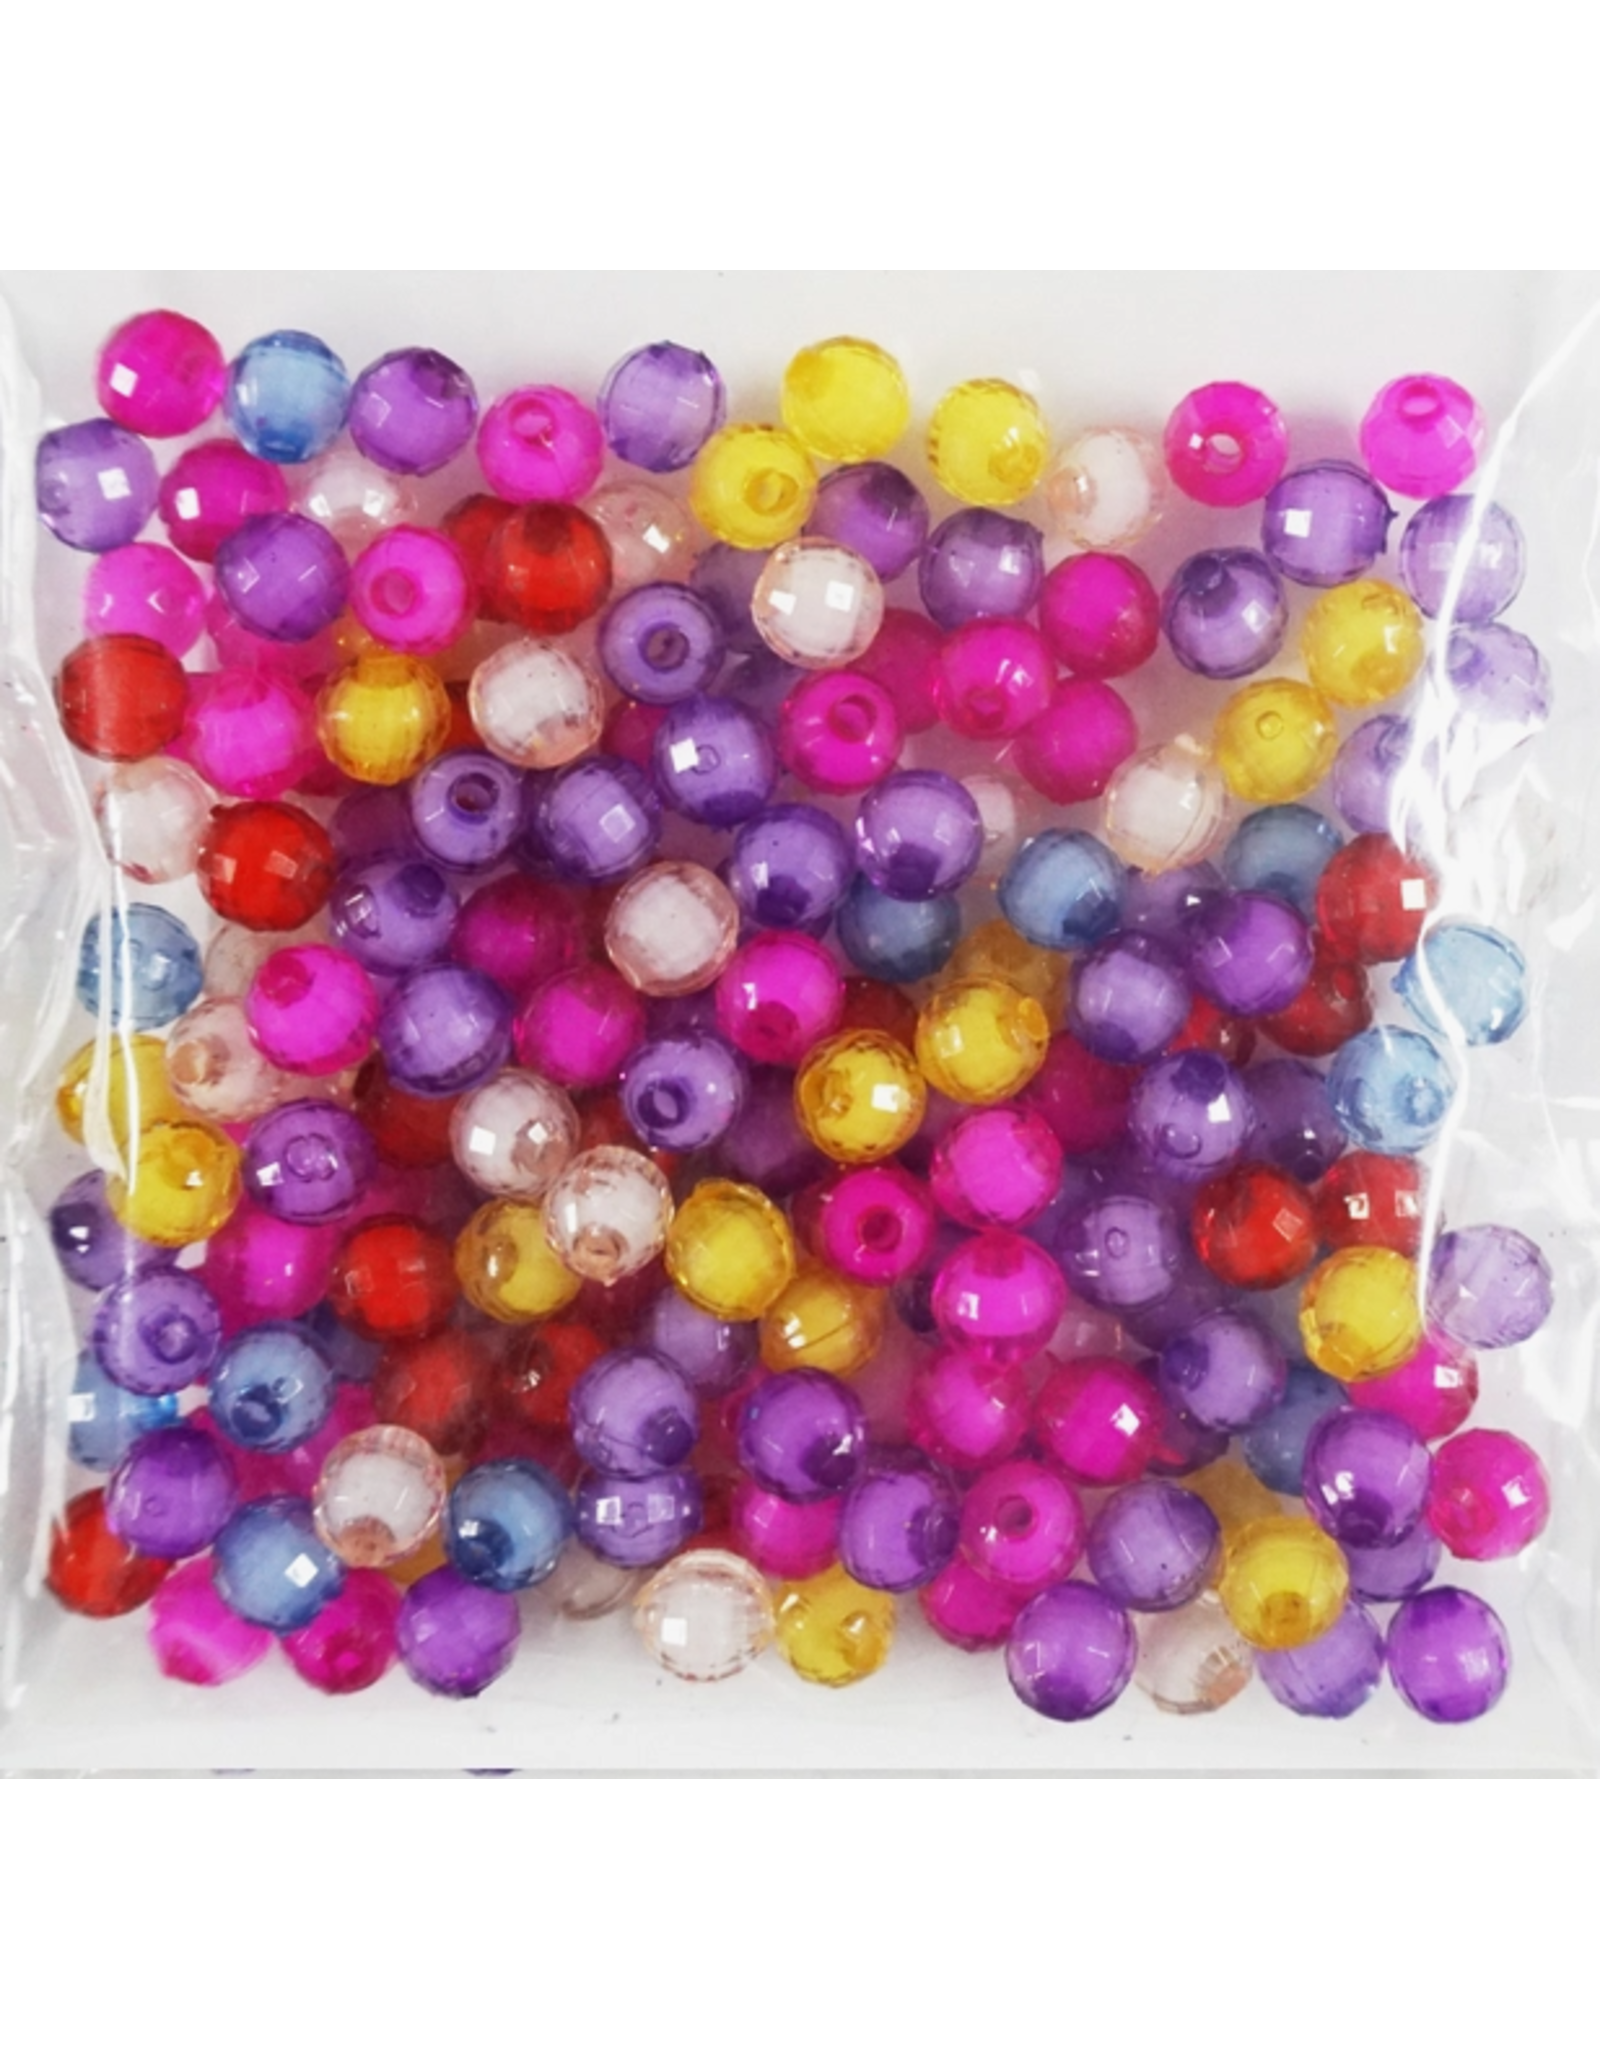 Beadia Hot Sale 100PCs/lot 8mm Shiny Acrylic Loose Beads for